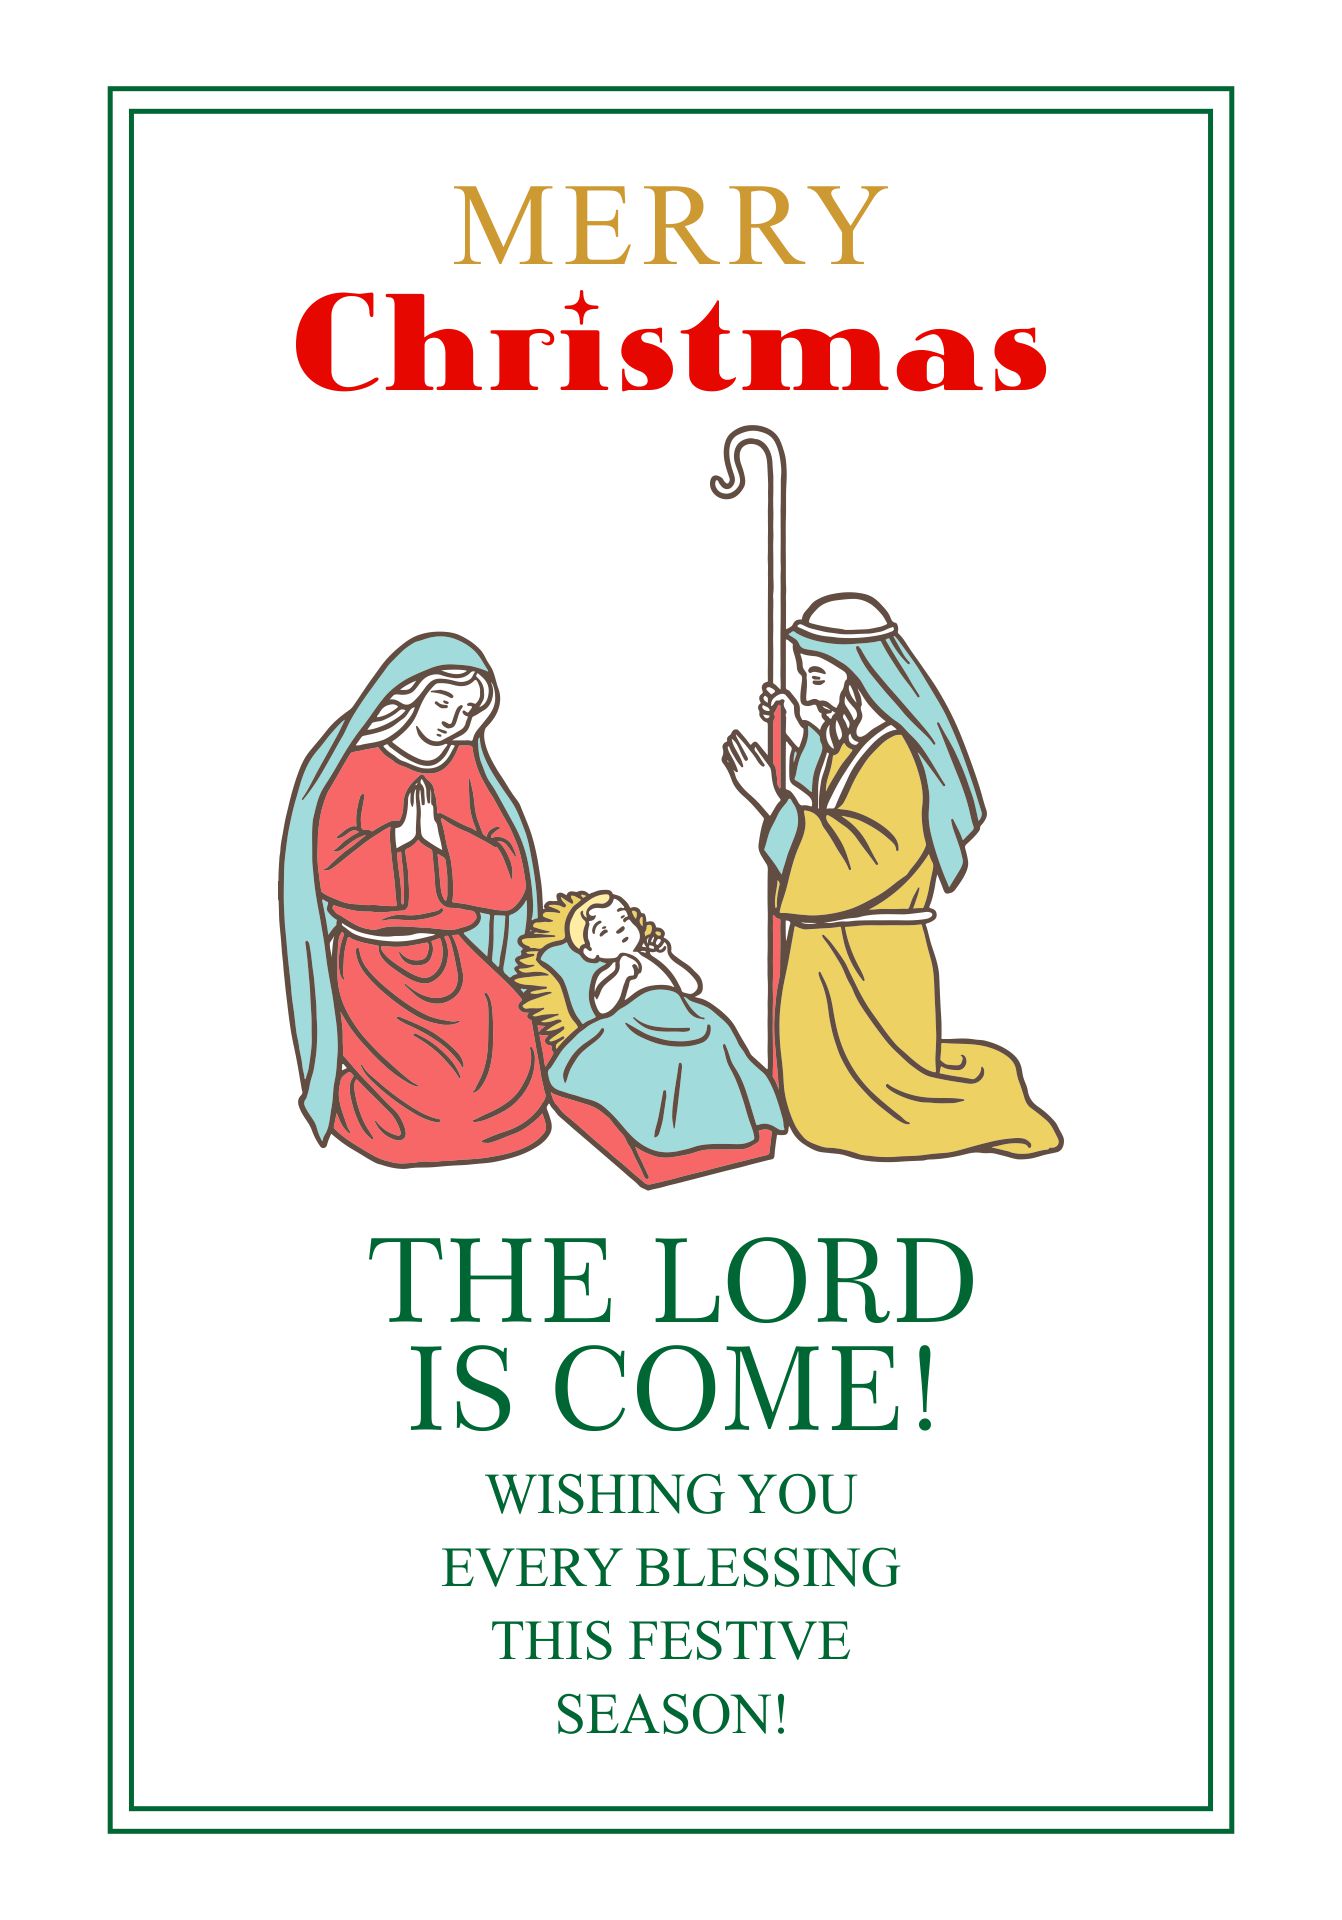 Christian Christmas Greeting Cards